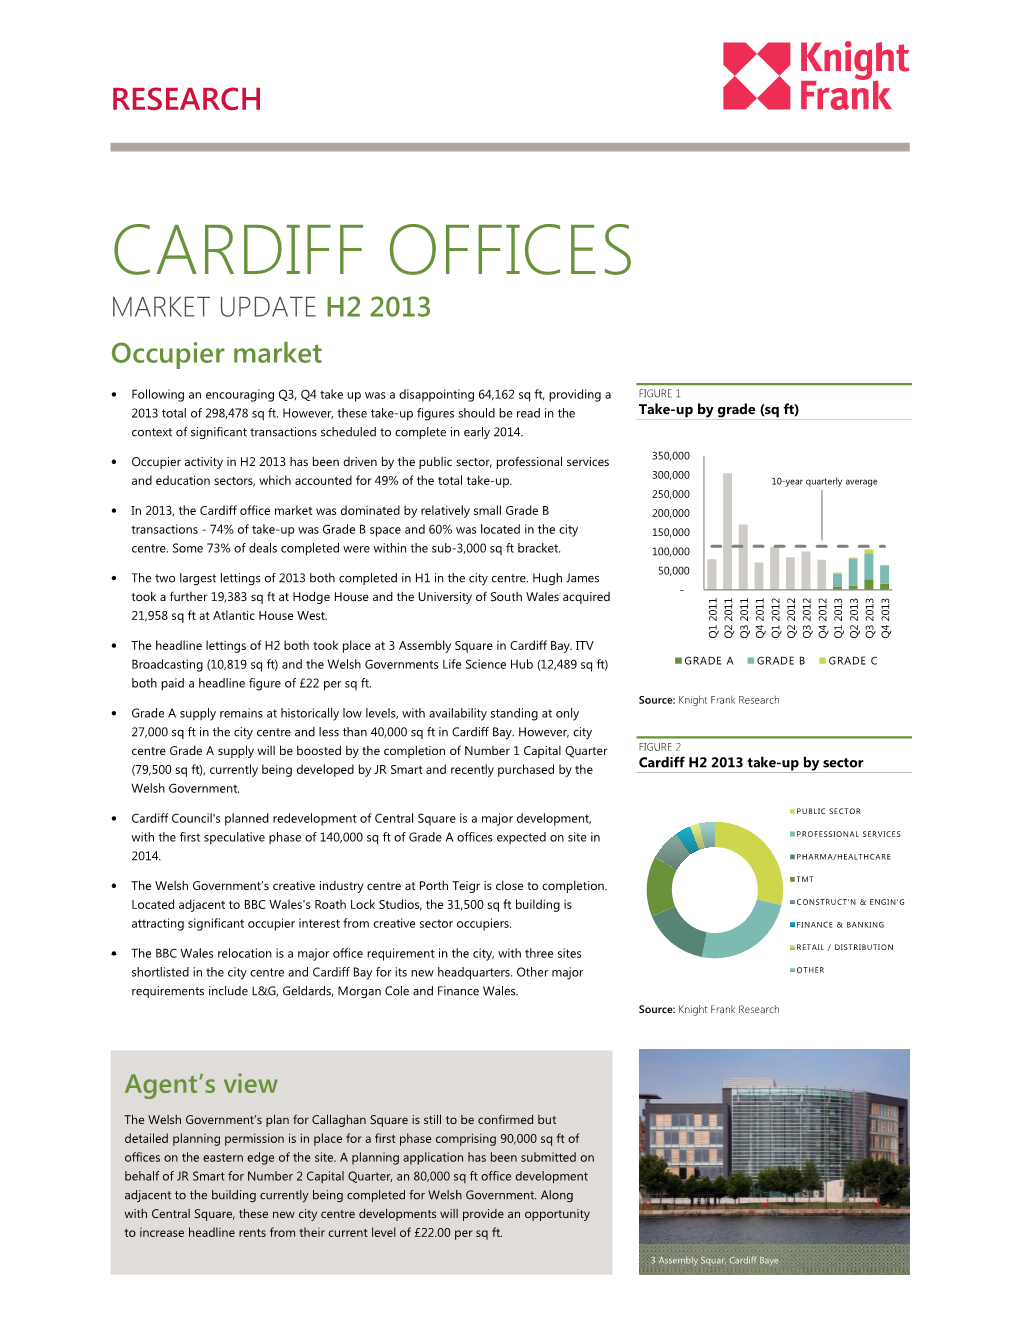 CARDIFF OFFICES MARKET UPDATE H2 2013 Occupier Market